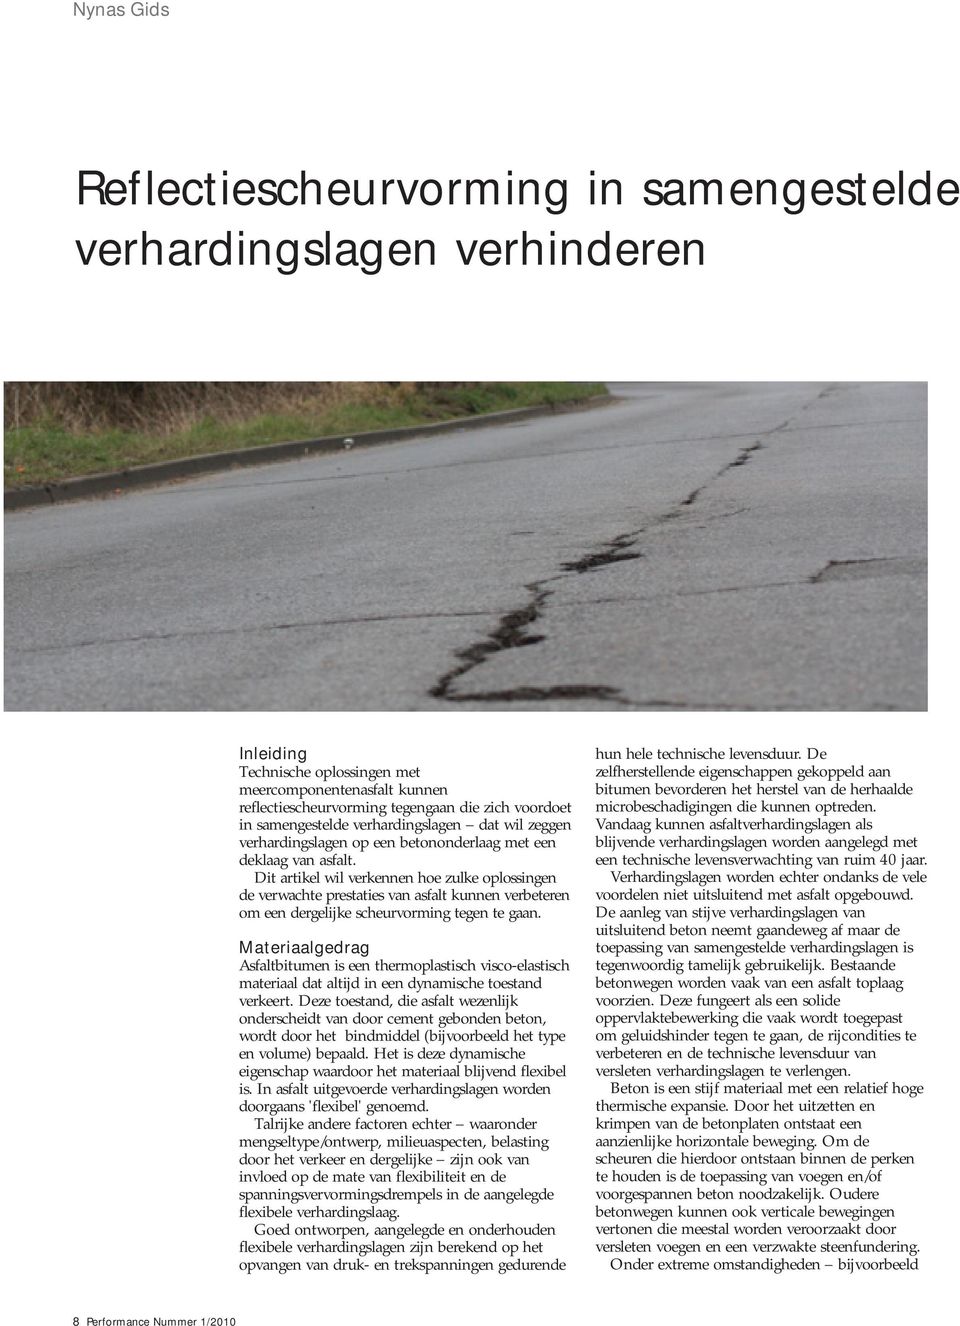 Dit artikel wil verkennen hoe zulke oplossingen de verwachte prestaties van asfalt kunnen verbeteren om een dergelijke scheurvorming tegen te gaan.